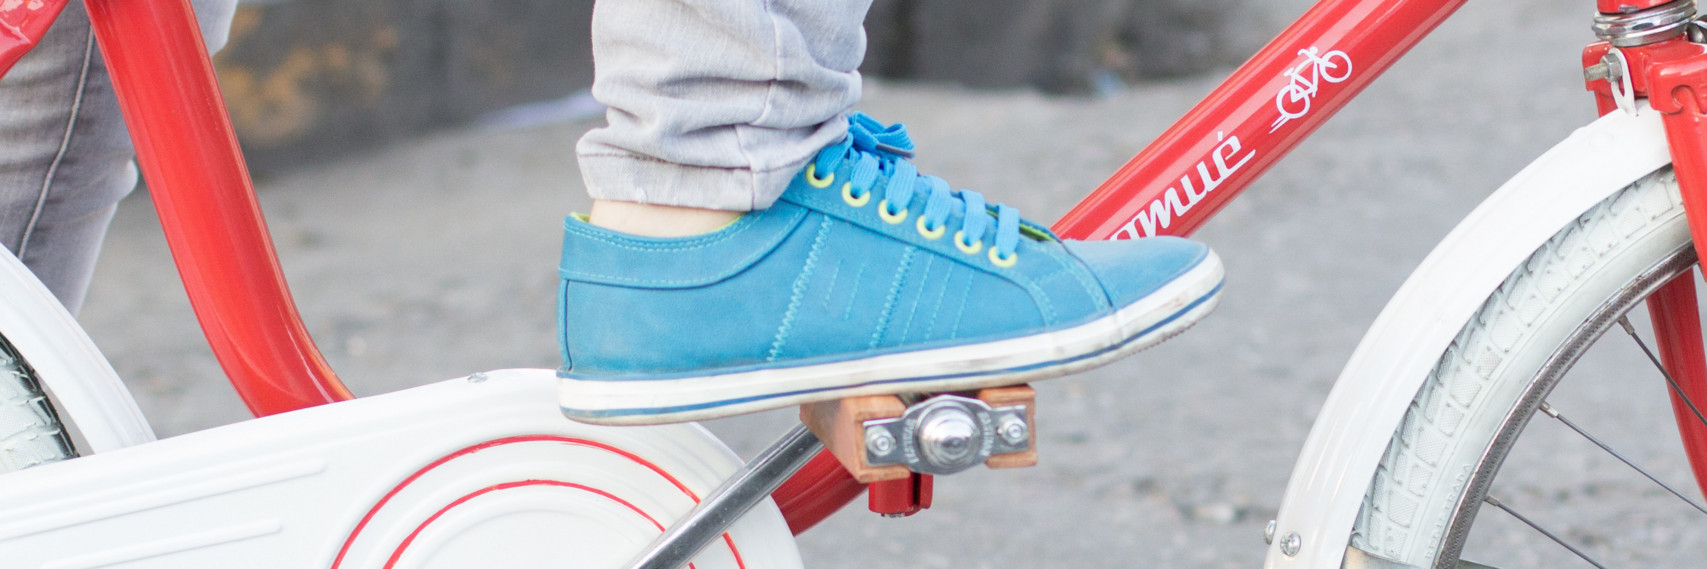 Foot in a blue sneaker on a bike pedal